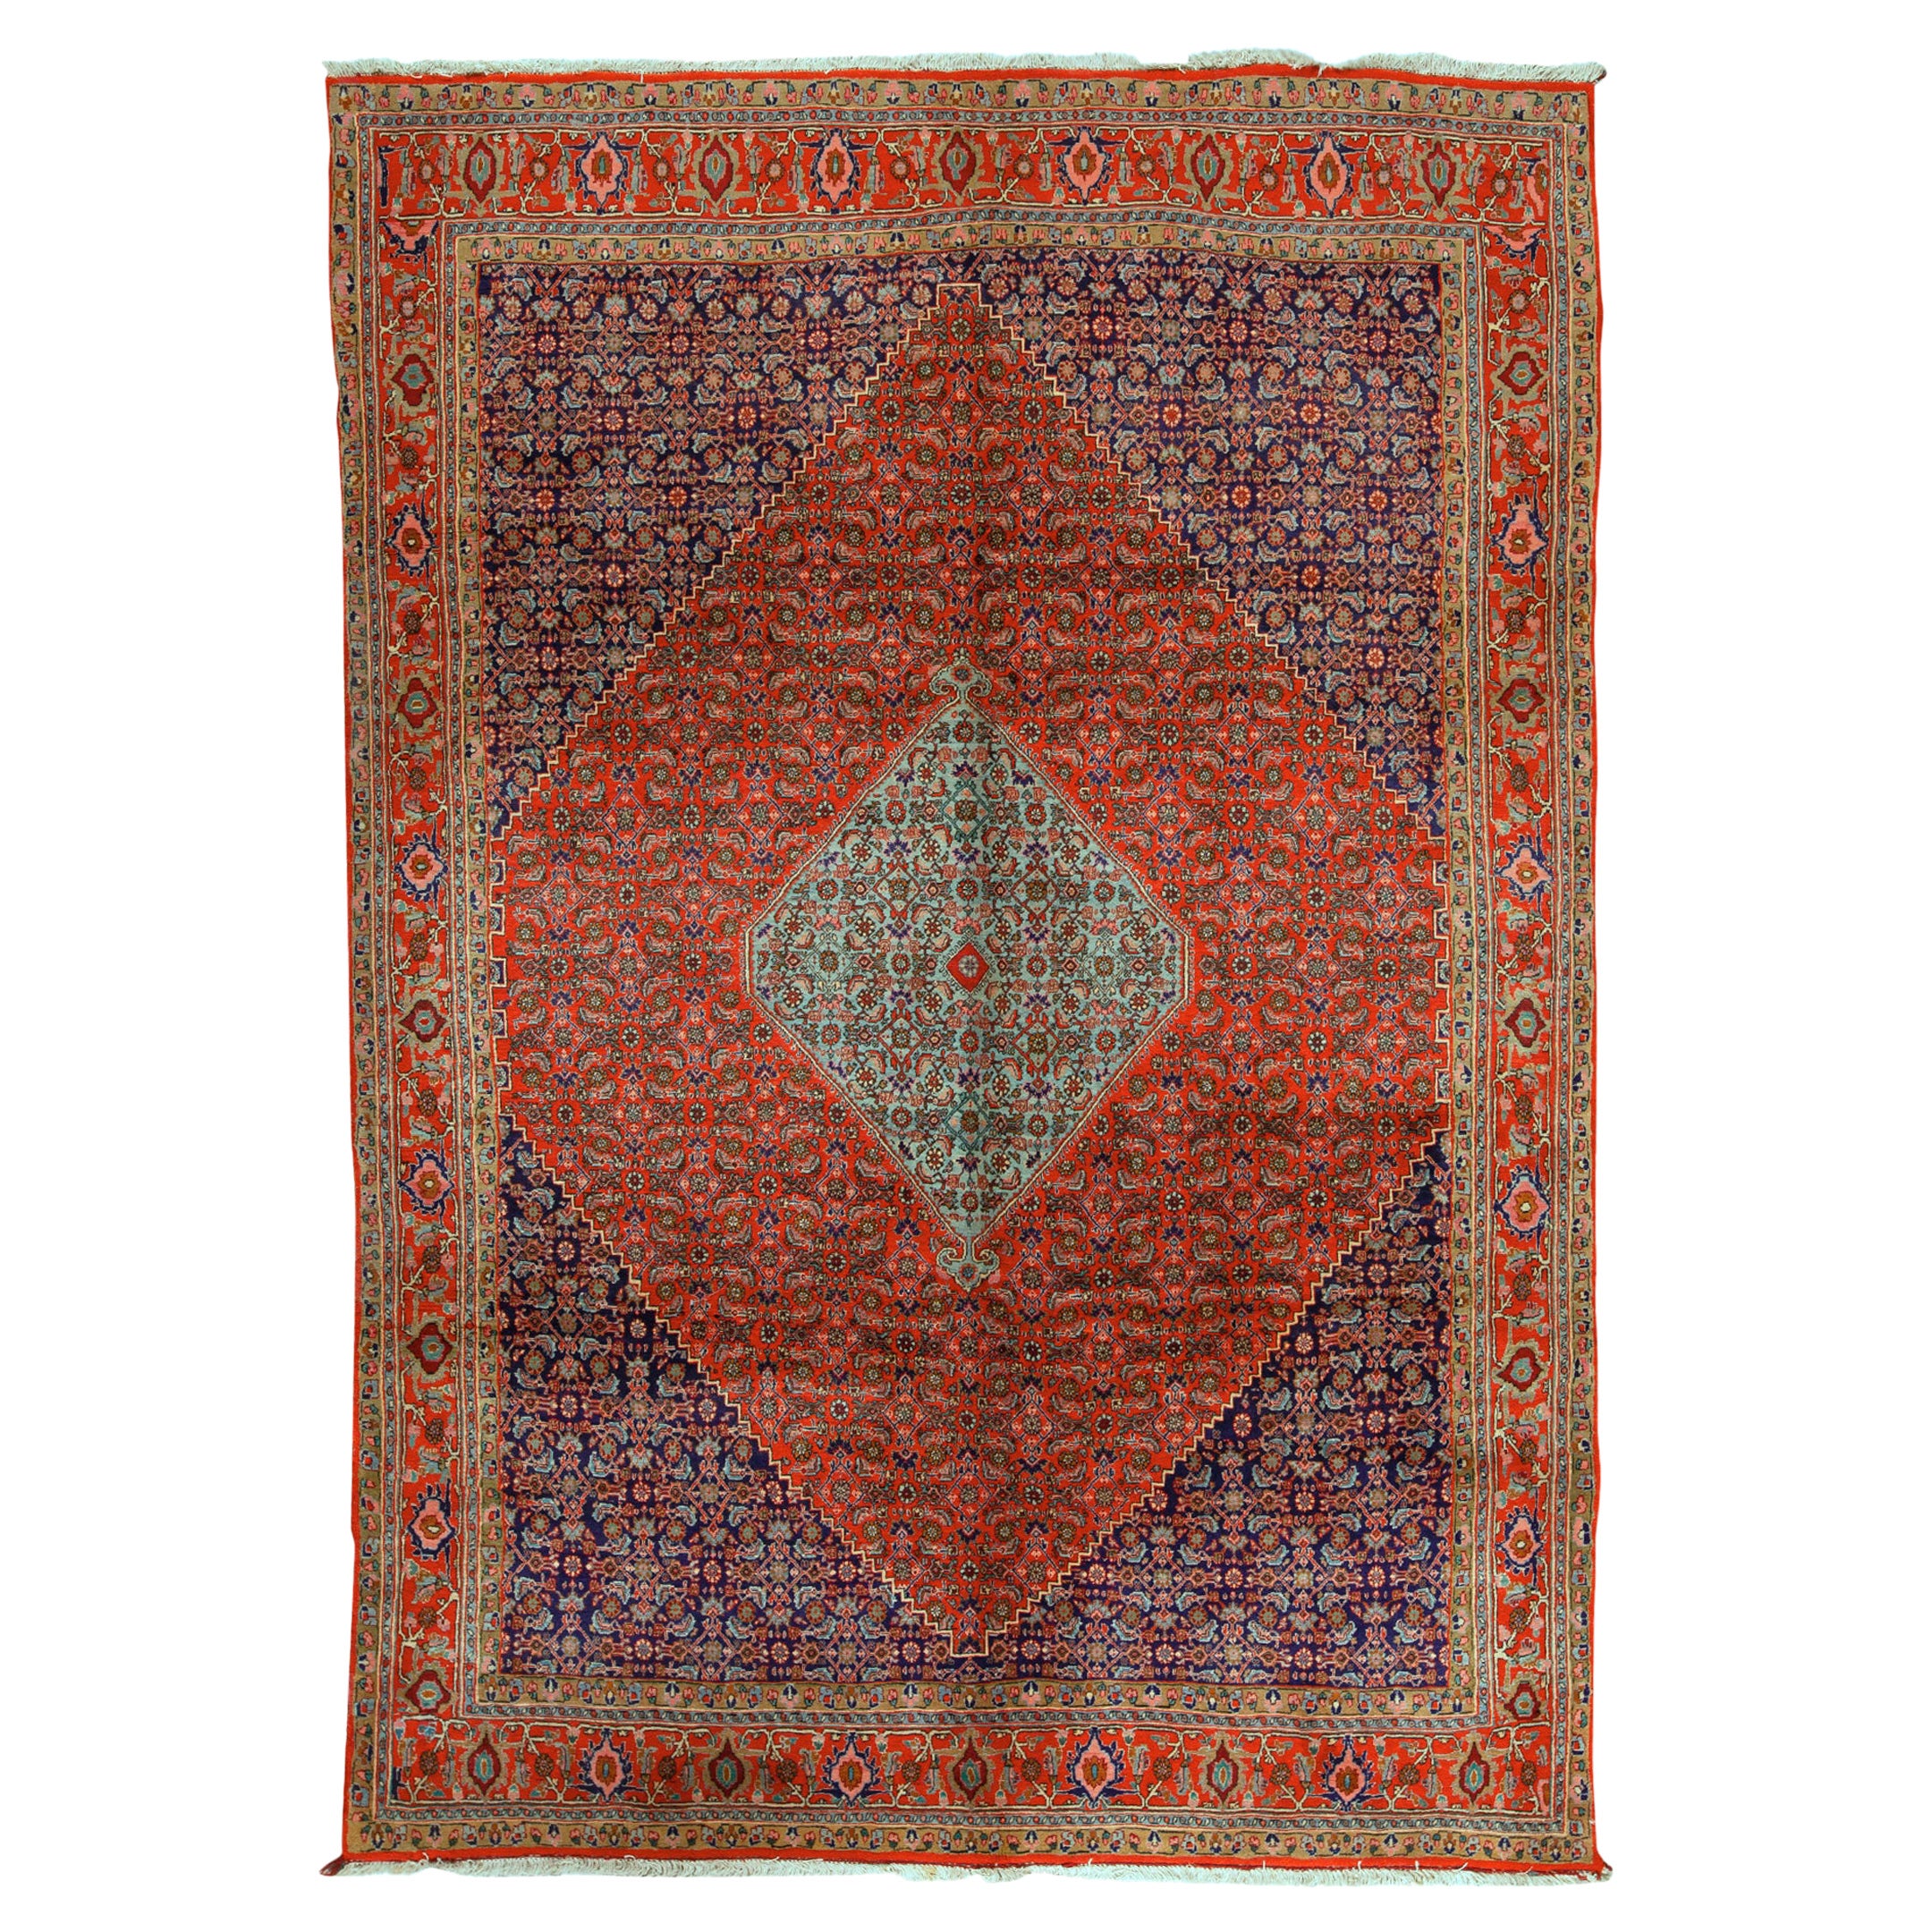 Ancien tapis persan traditionnel tissé à la main de luxe en laine rouge/bleu marine